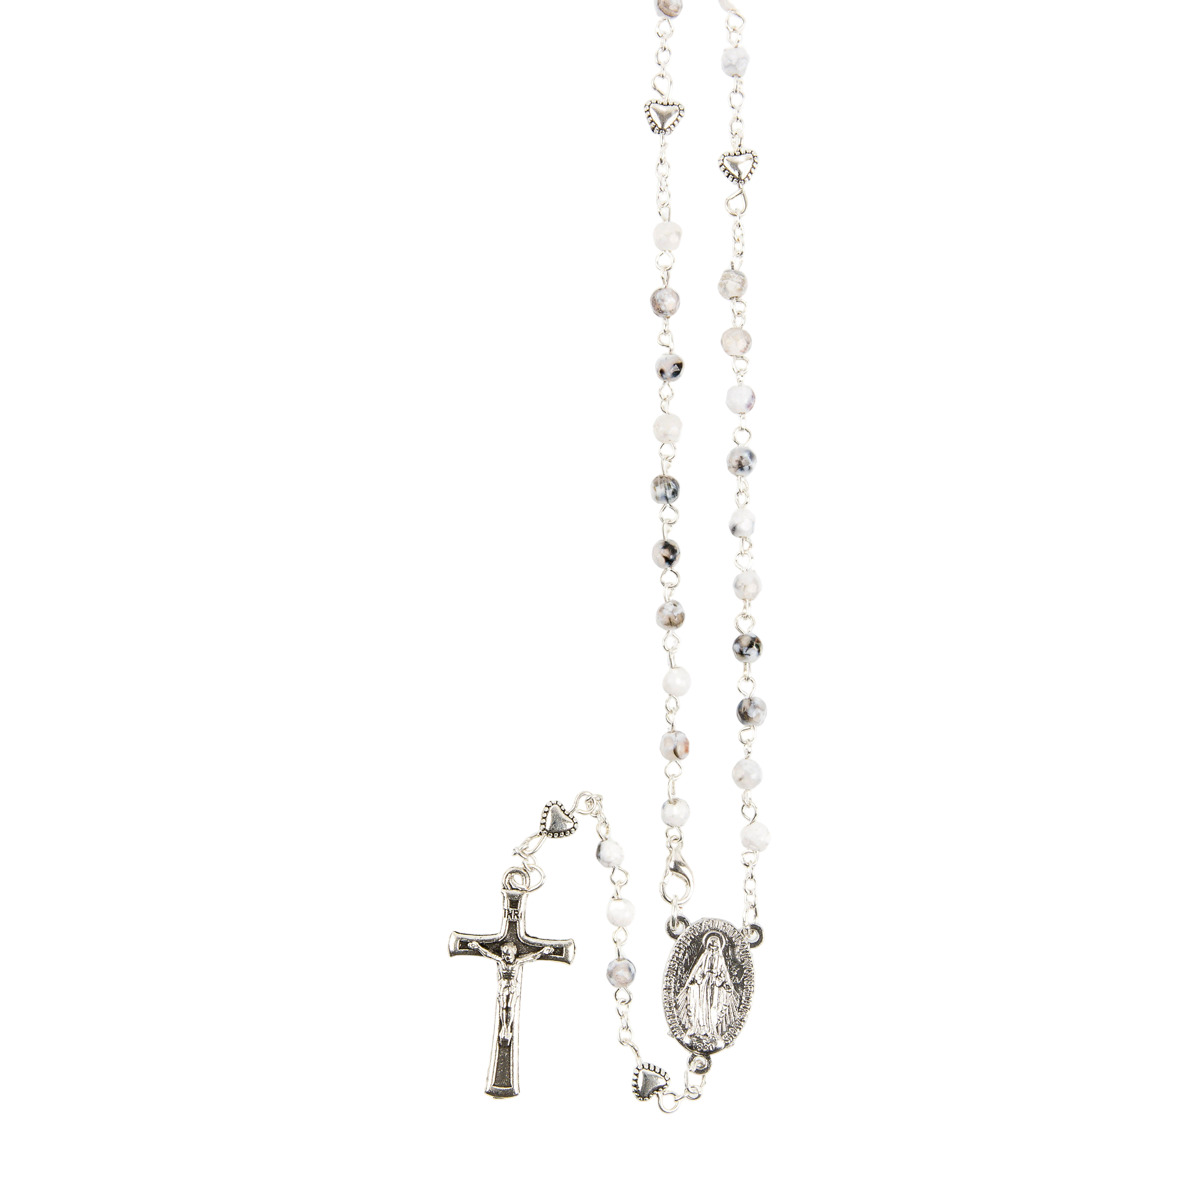 Chapelet grains marbrés Ø 4 mm, paters forme coeur, chaîne couleur argentée avec fermoir, longueur au cœur 26 cm, croix avec Christ.